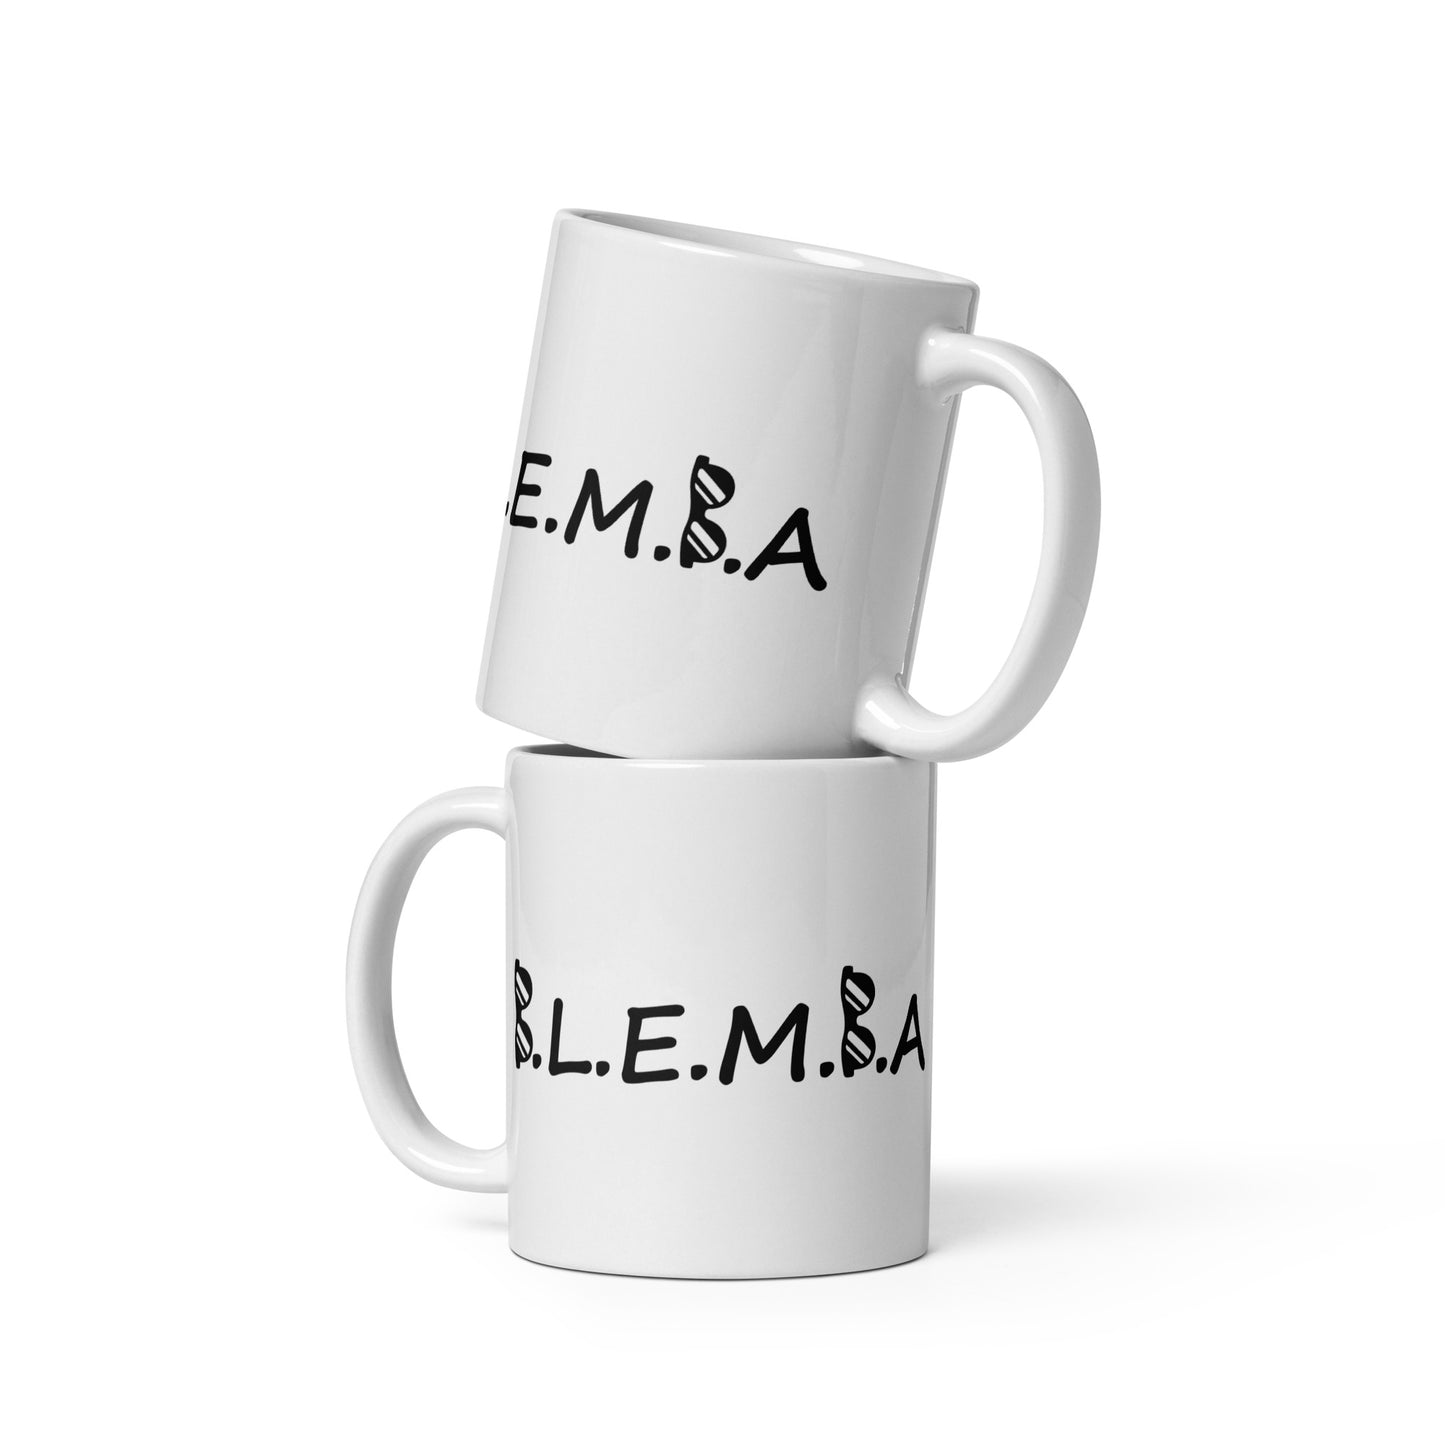 White glossy mug: Blemba blemba